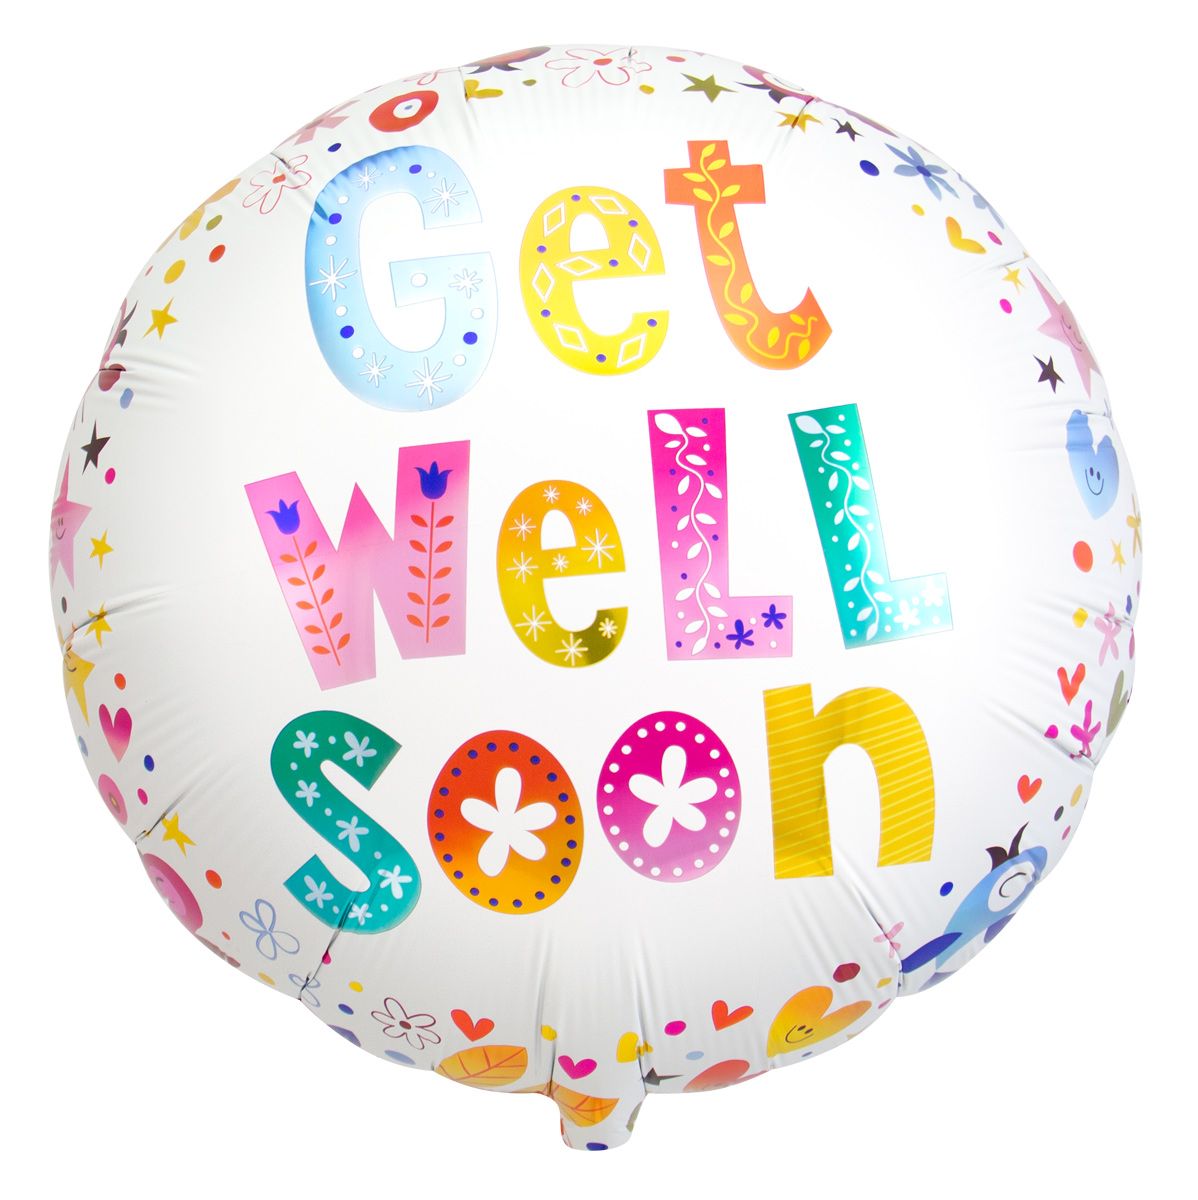 Get well soon bloemen folieballon